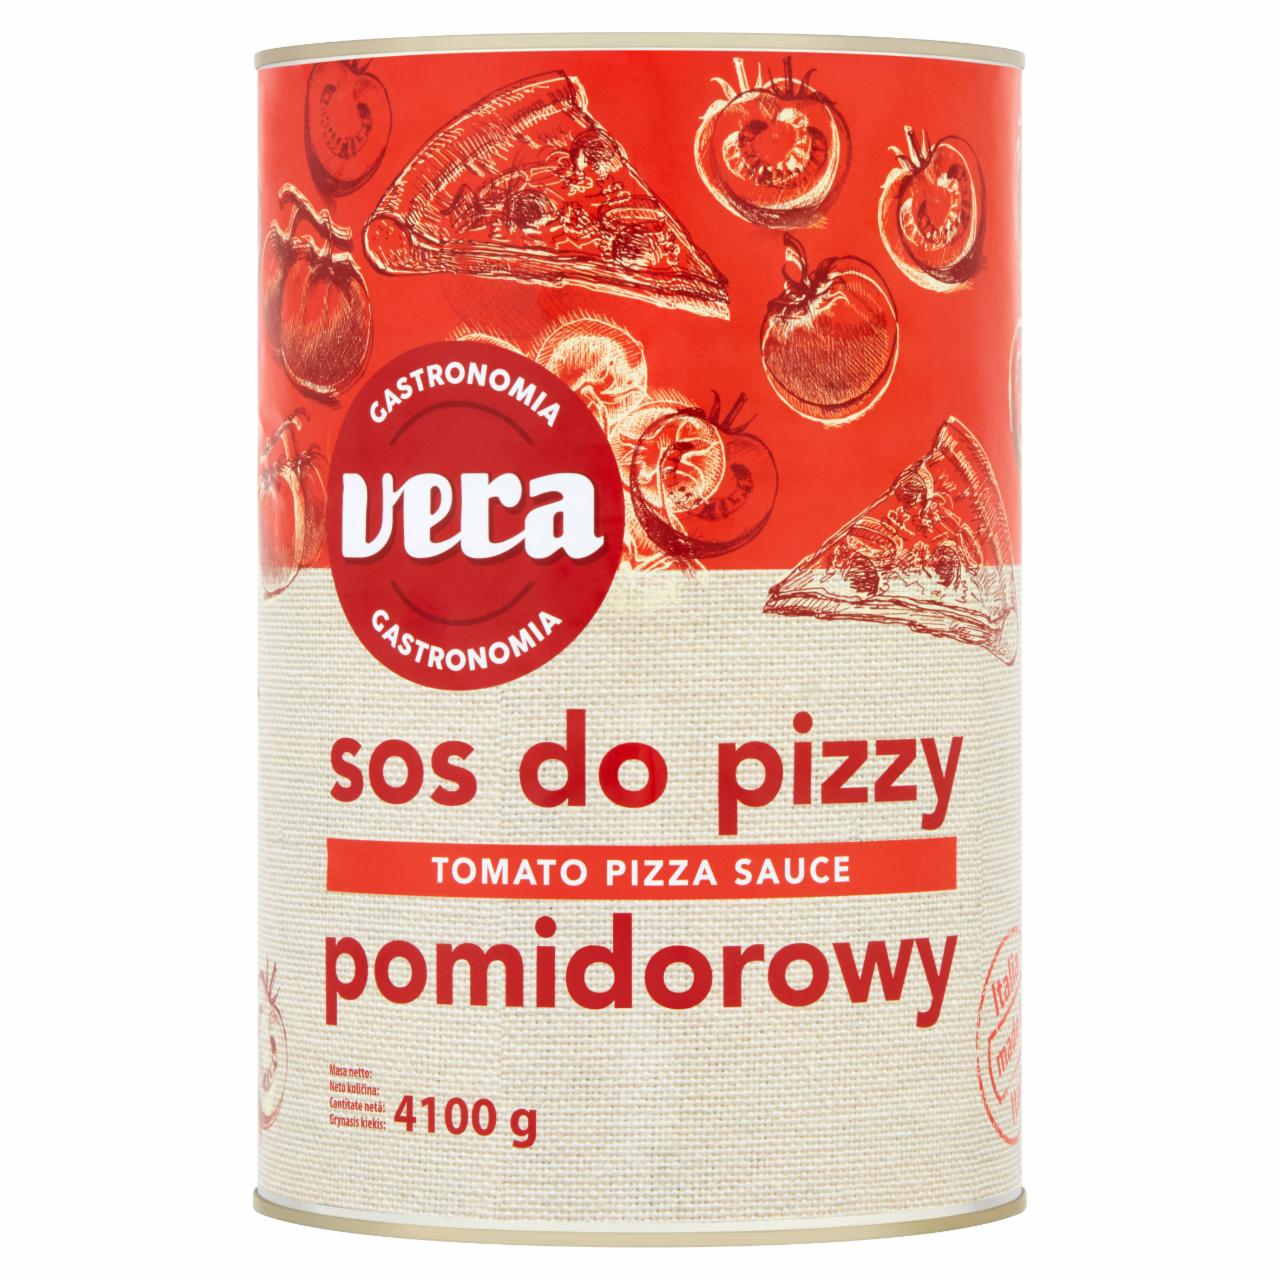 Zdjęcia - Vera Gastronomia Sos do pizzy pomidorowy 4100 g